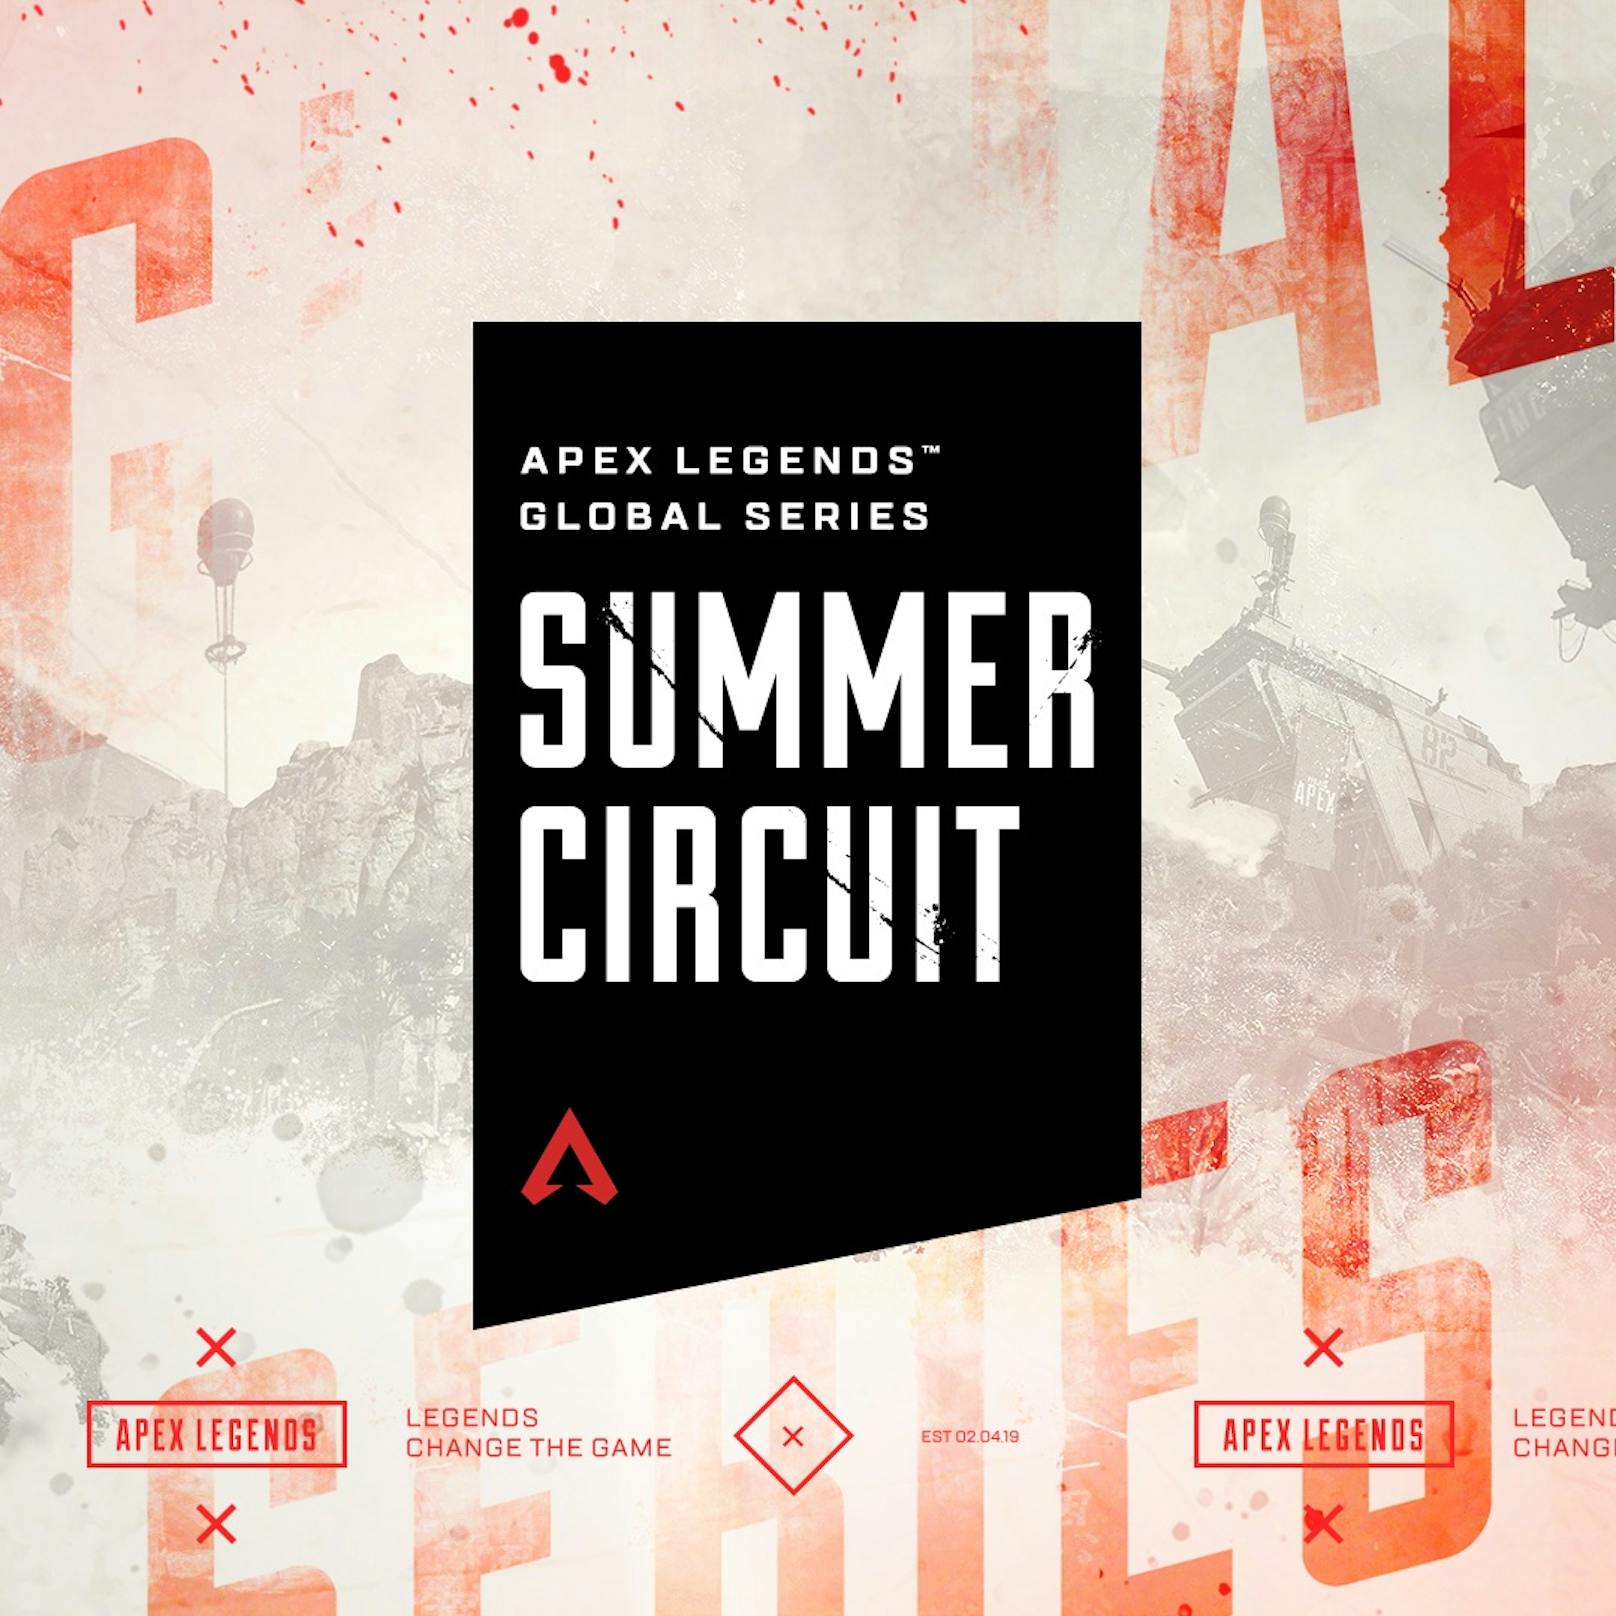 Apex Legends: Global Series mit neuem Summer Circuit und vielen eSports-Turnieren angekündigt.